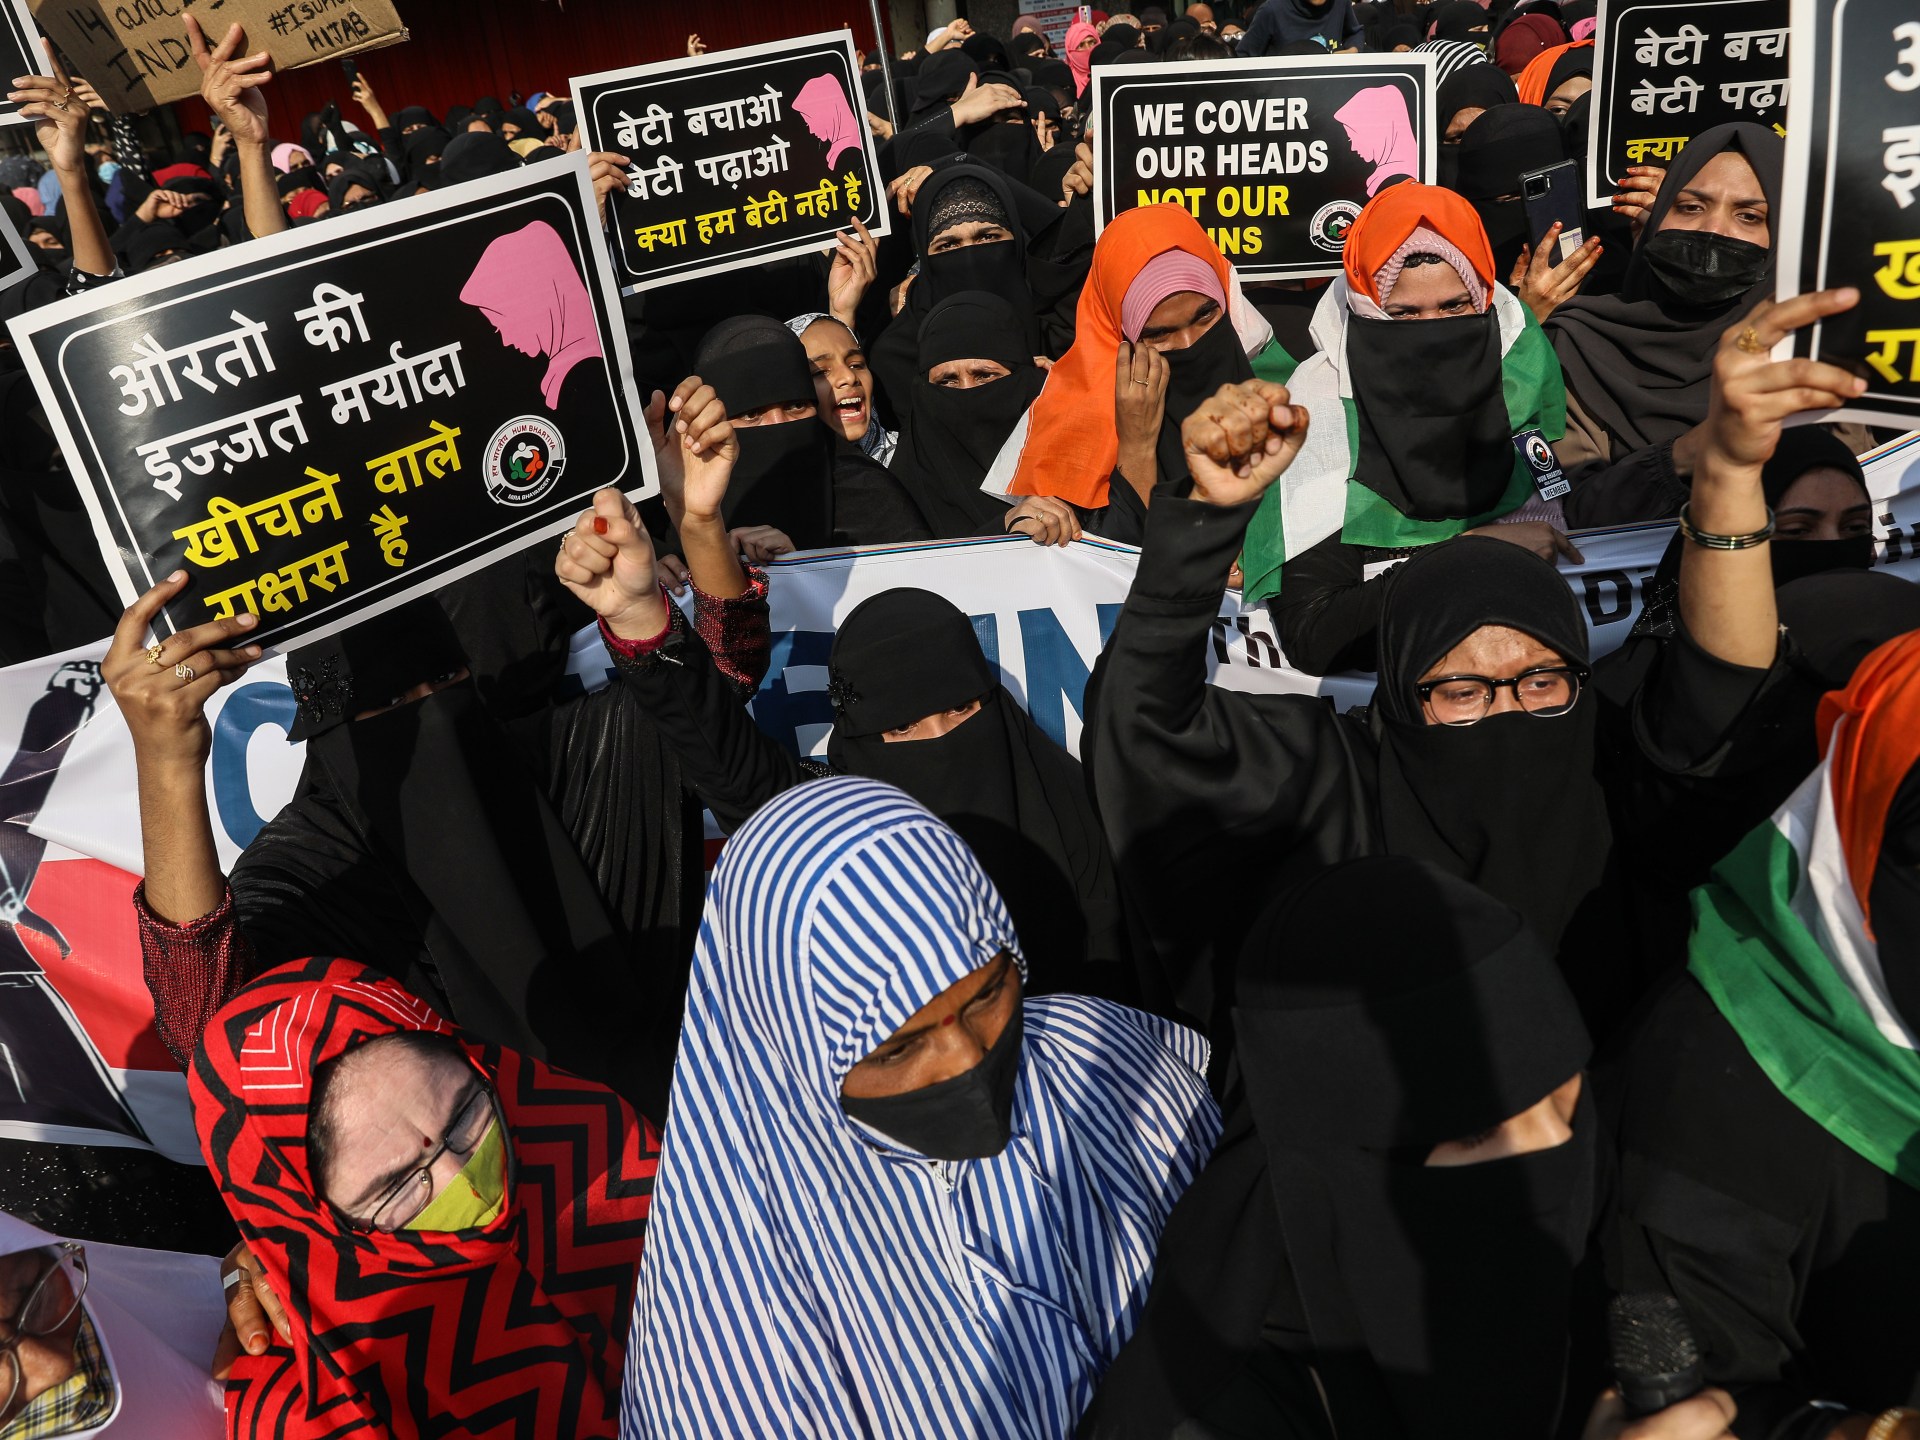 أمنستي تدعو الهند لوقف قمع المسلمين وهدم منازلهم ومحلاتهم | أخبار حريات – البوكس نيوز